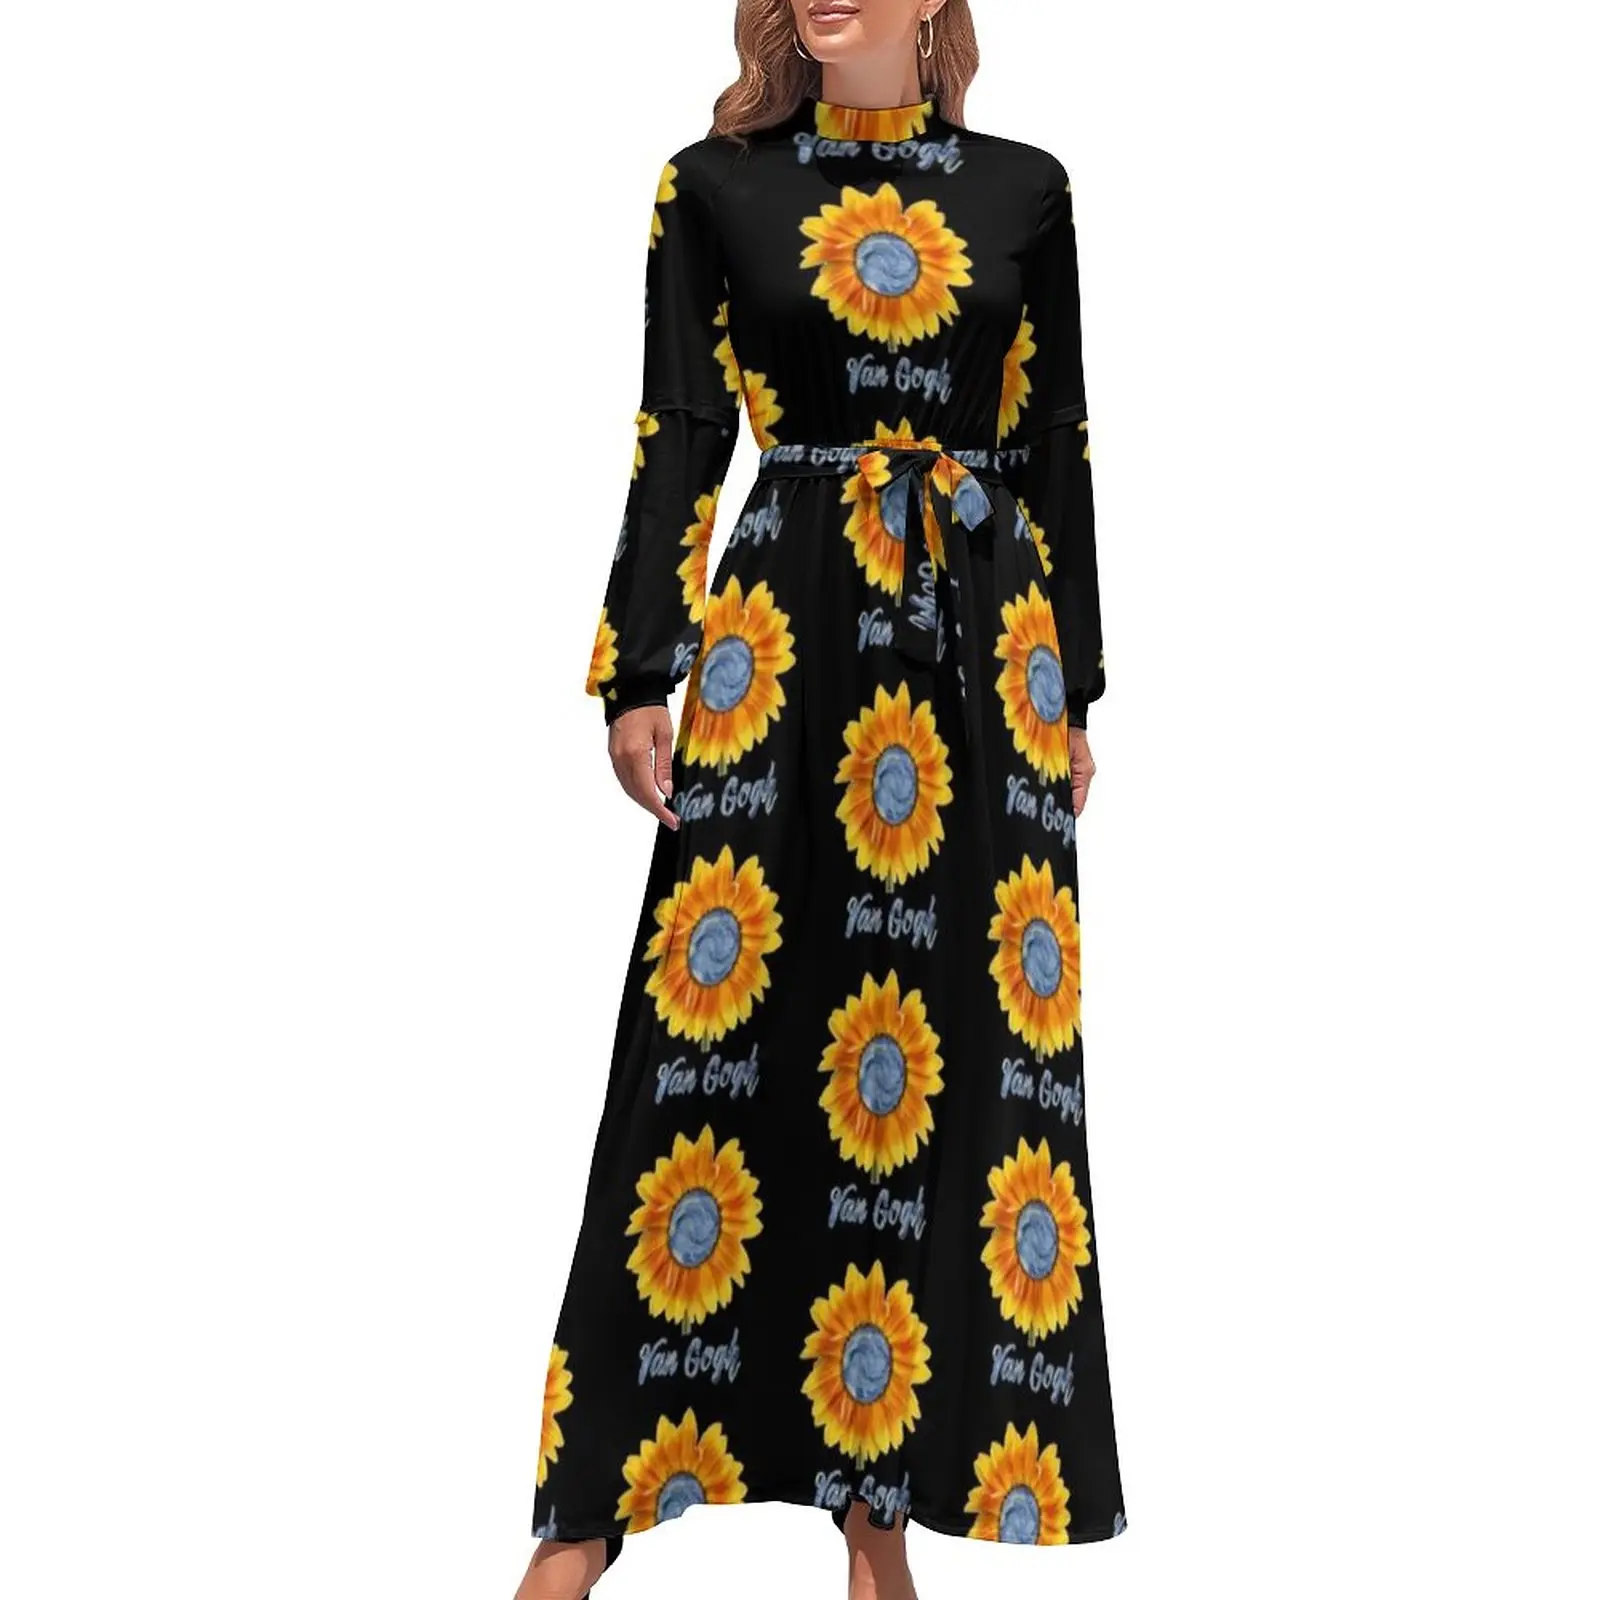 

Sunflower Art Dress Van Gogh Starry Night Sunflowers Street Wear Bohemia Dresses Woman Long-Sleeve High Neck Long Maxi Dress